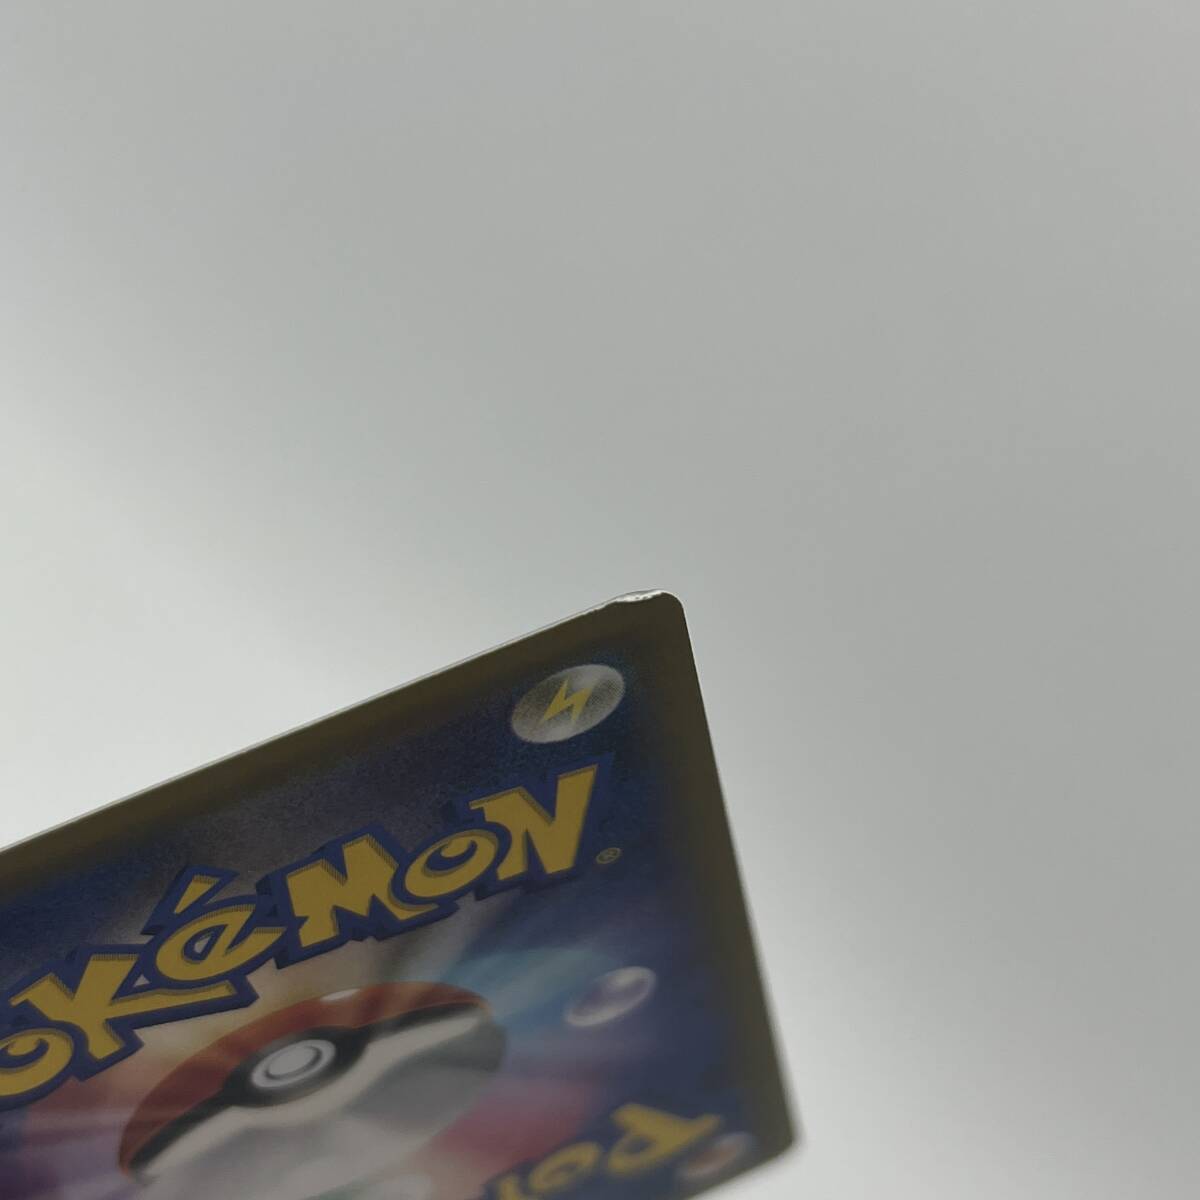 tu088 Pokemon card azsaSR XY8 064/059 * used 